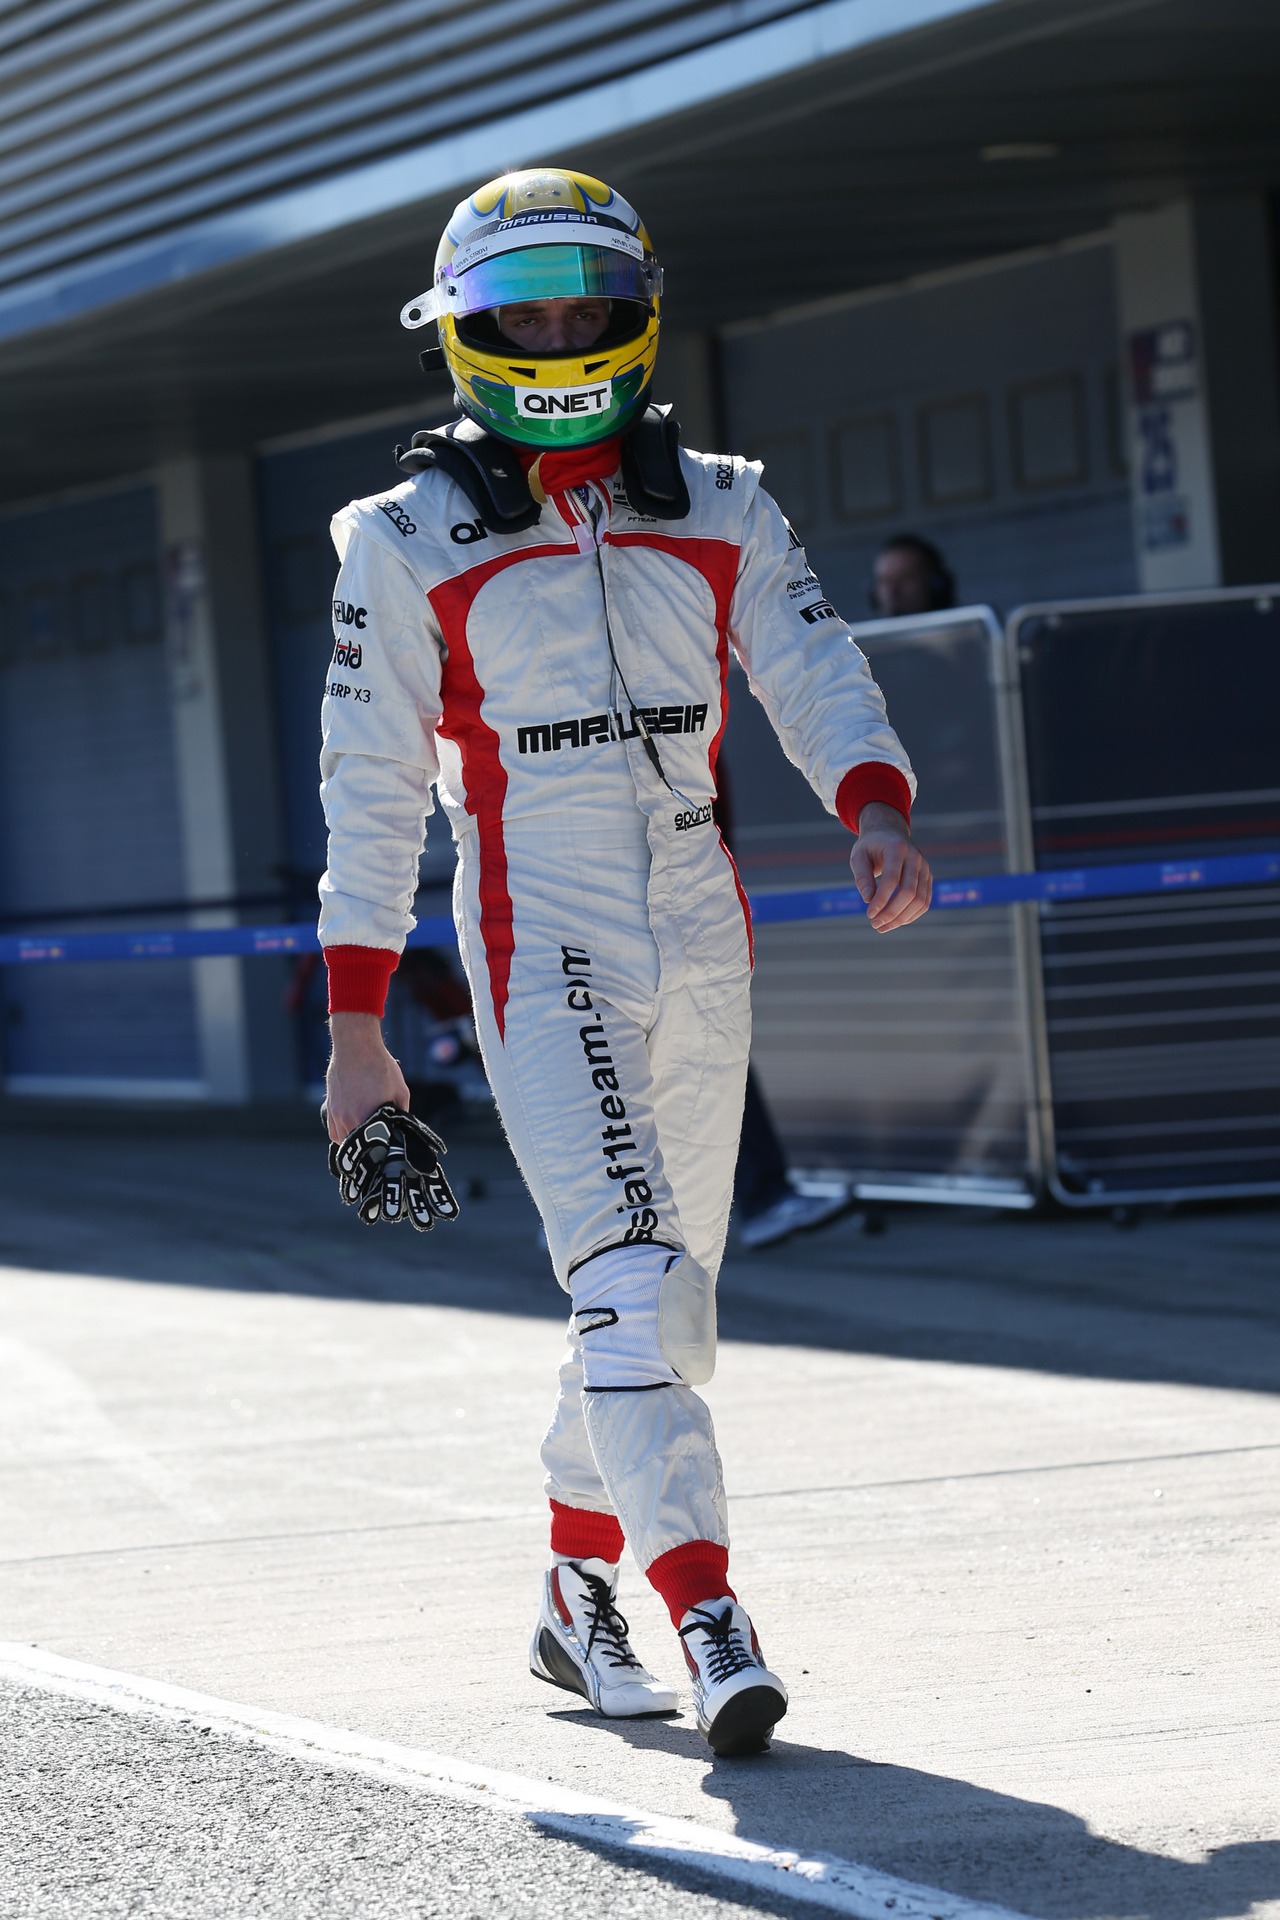 Luiz Razia (BRA) Marussia F1 Team.
06.02.2013. 